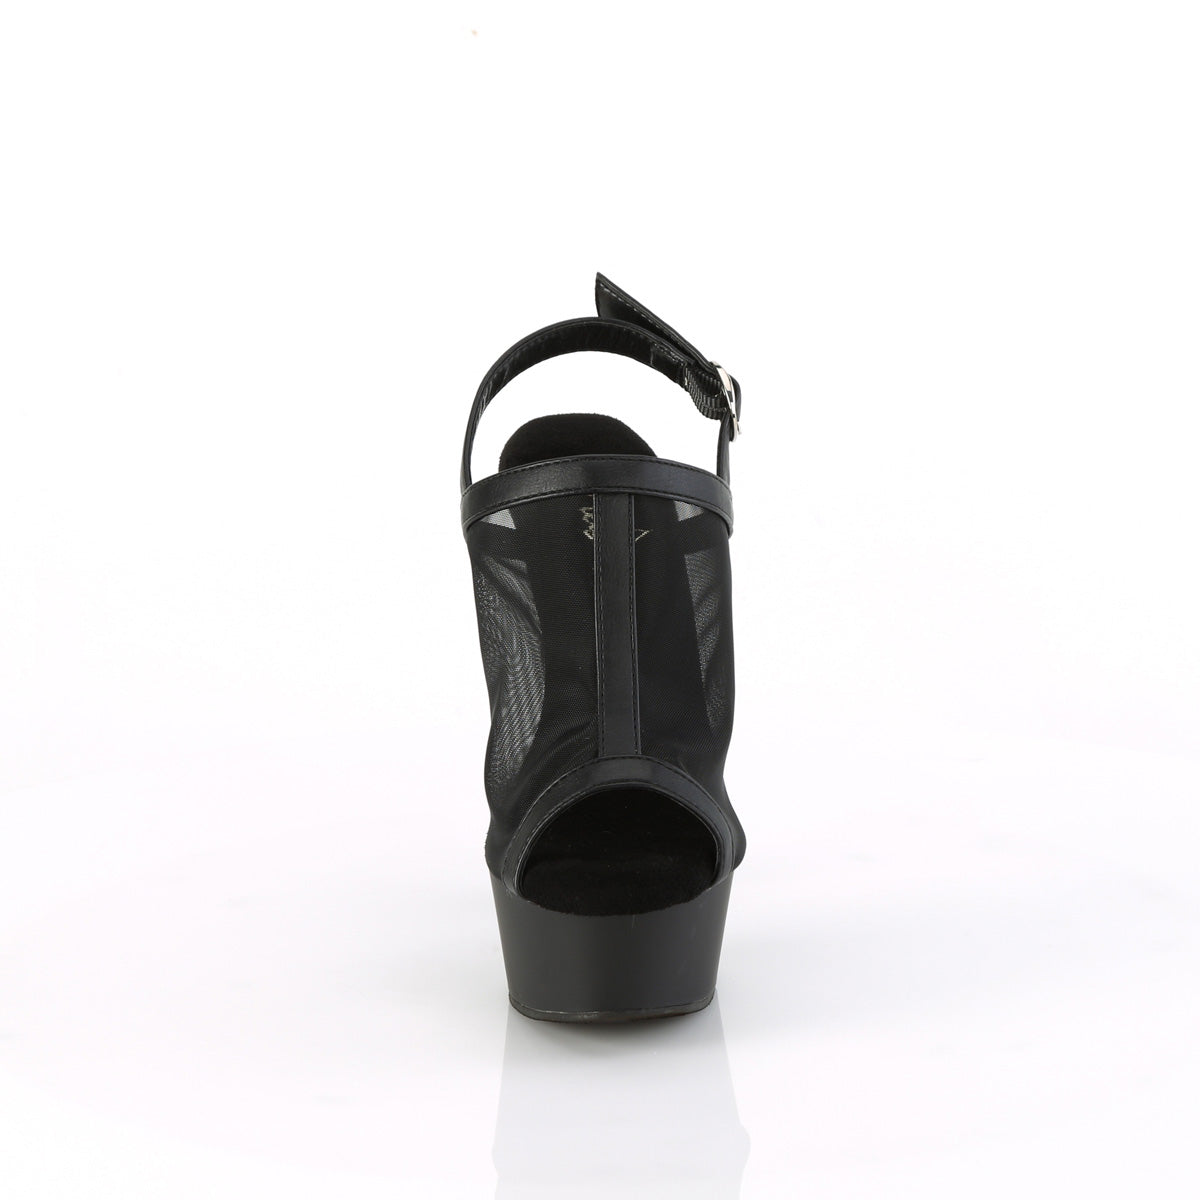 DELIGHT-636 Pleaser Black Faux Le-Mesh/Black Matte Platform Shoes [Exotic Dance Shoes]